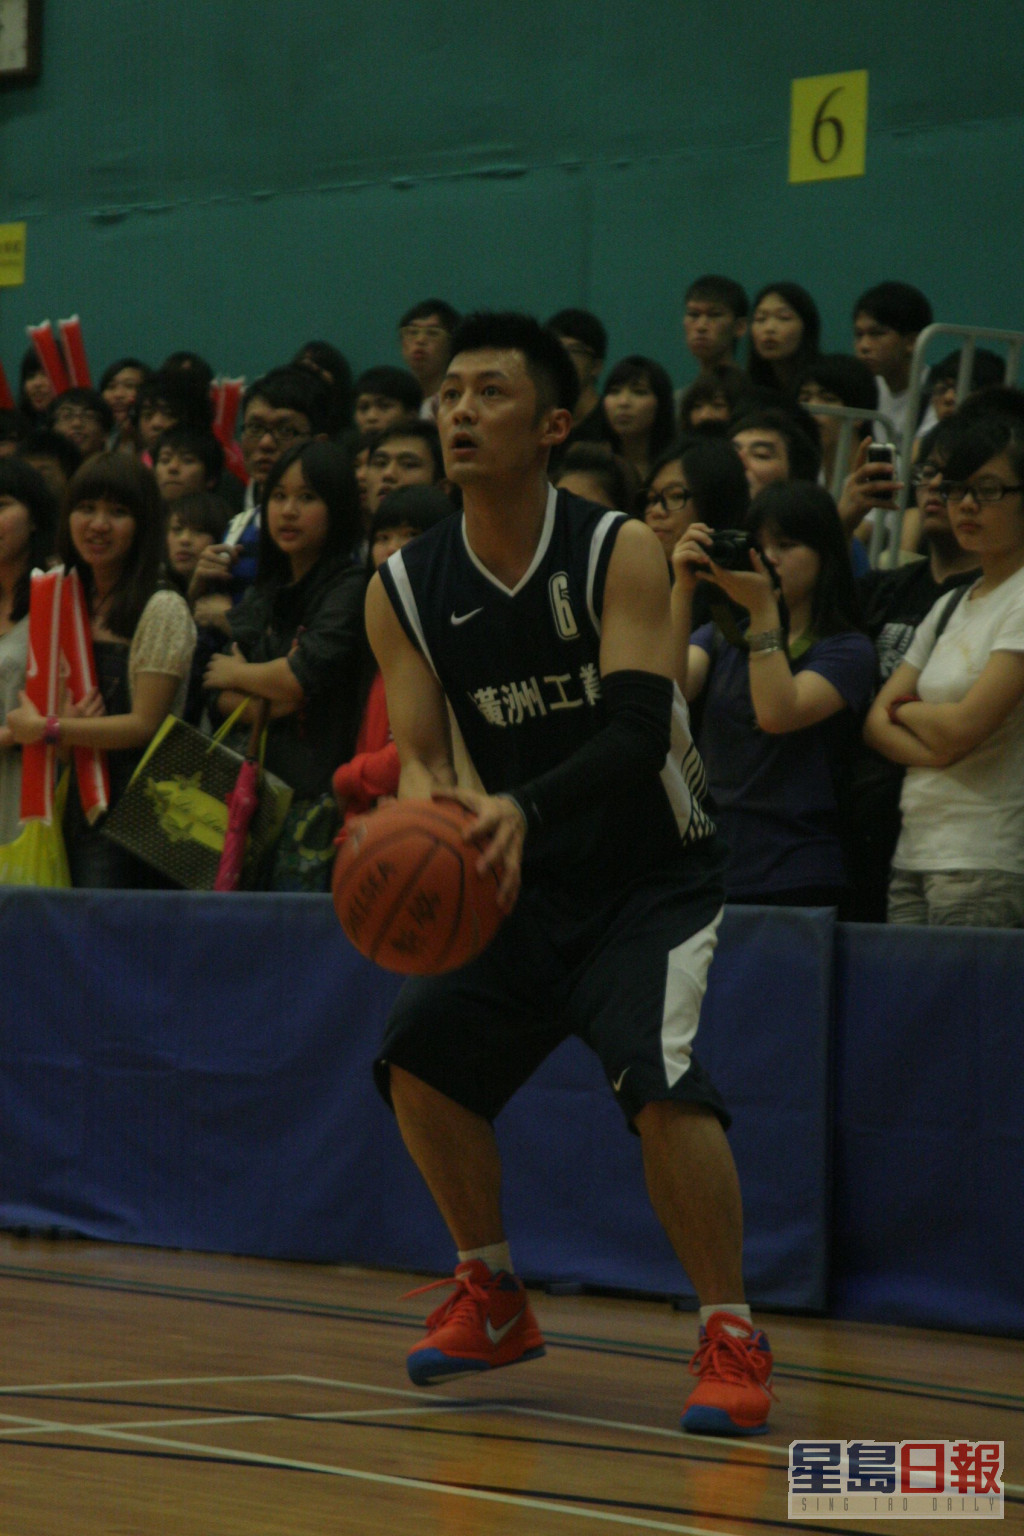 球技在香港藝人中絕對不俗。